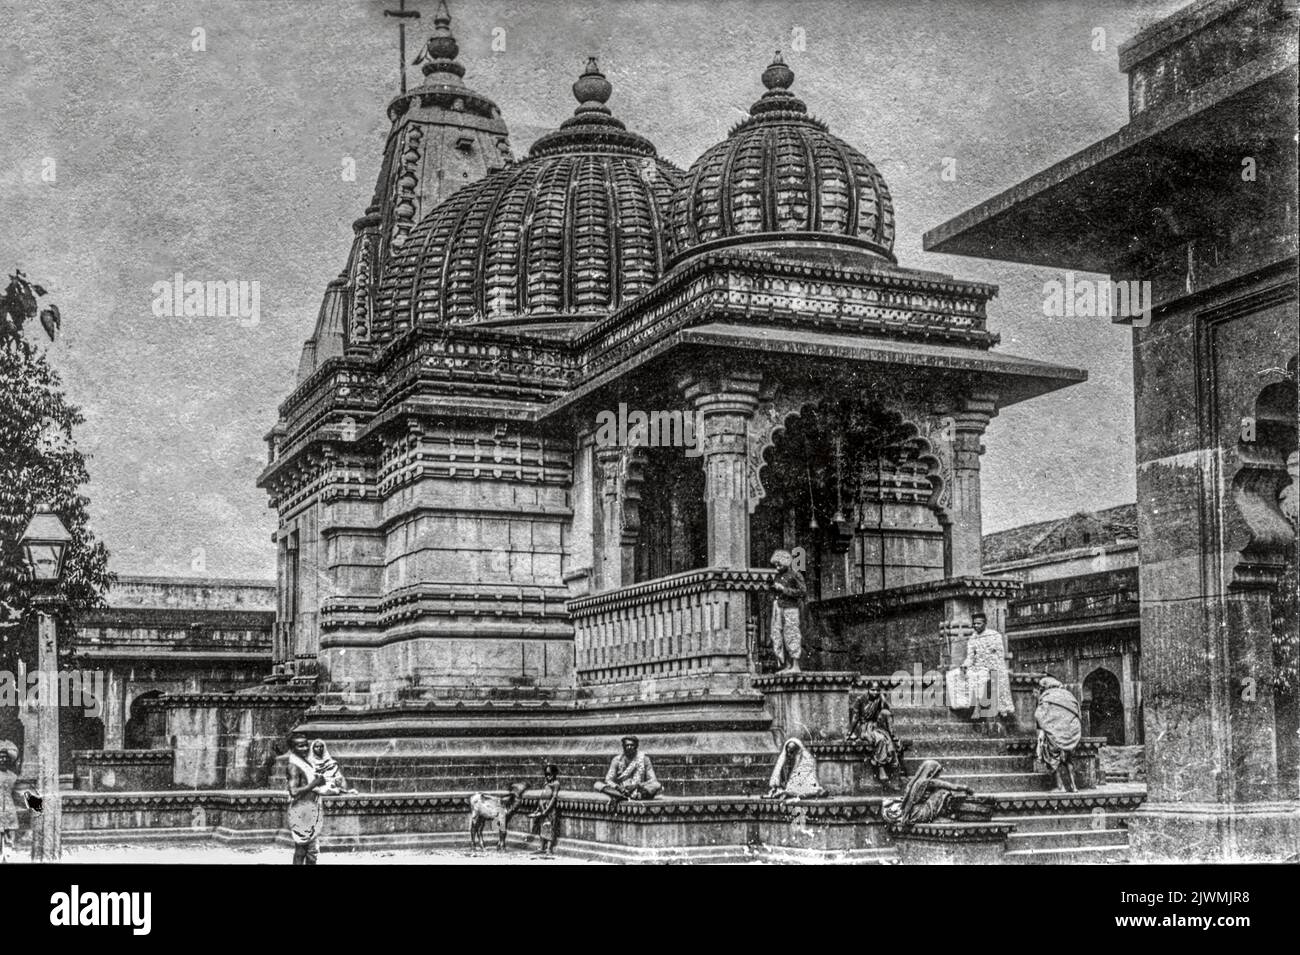 03 04 2018 Vintage Black and White Photo of Kalaram temple, nashik ...